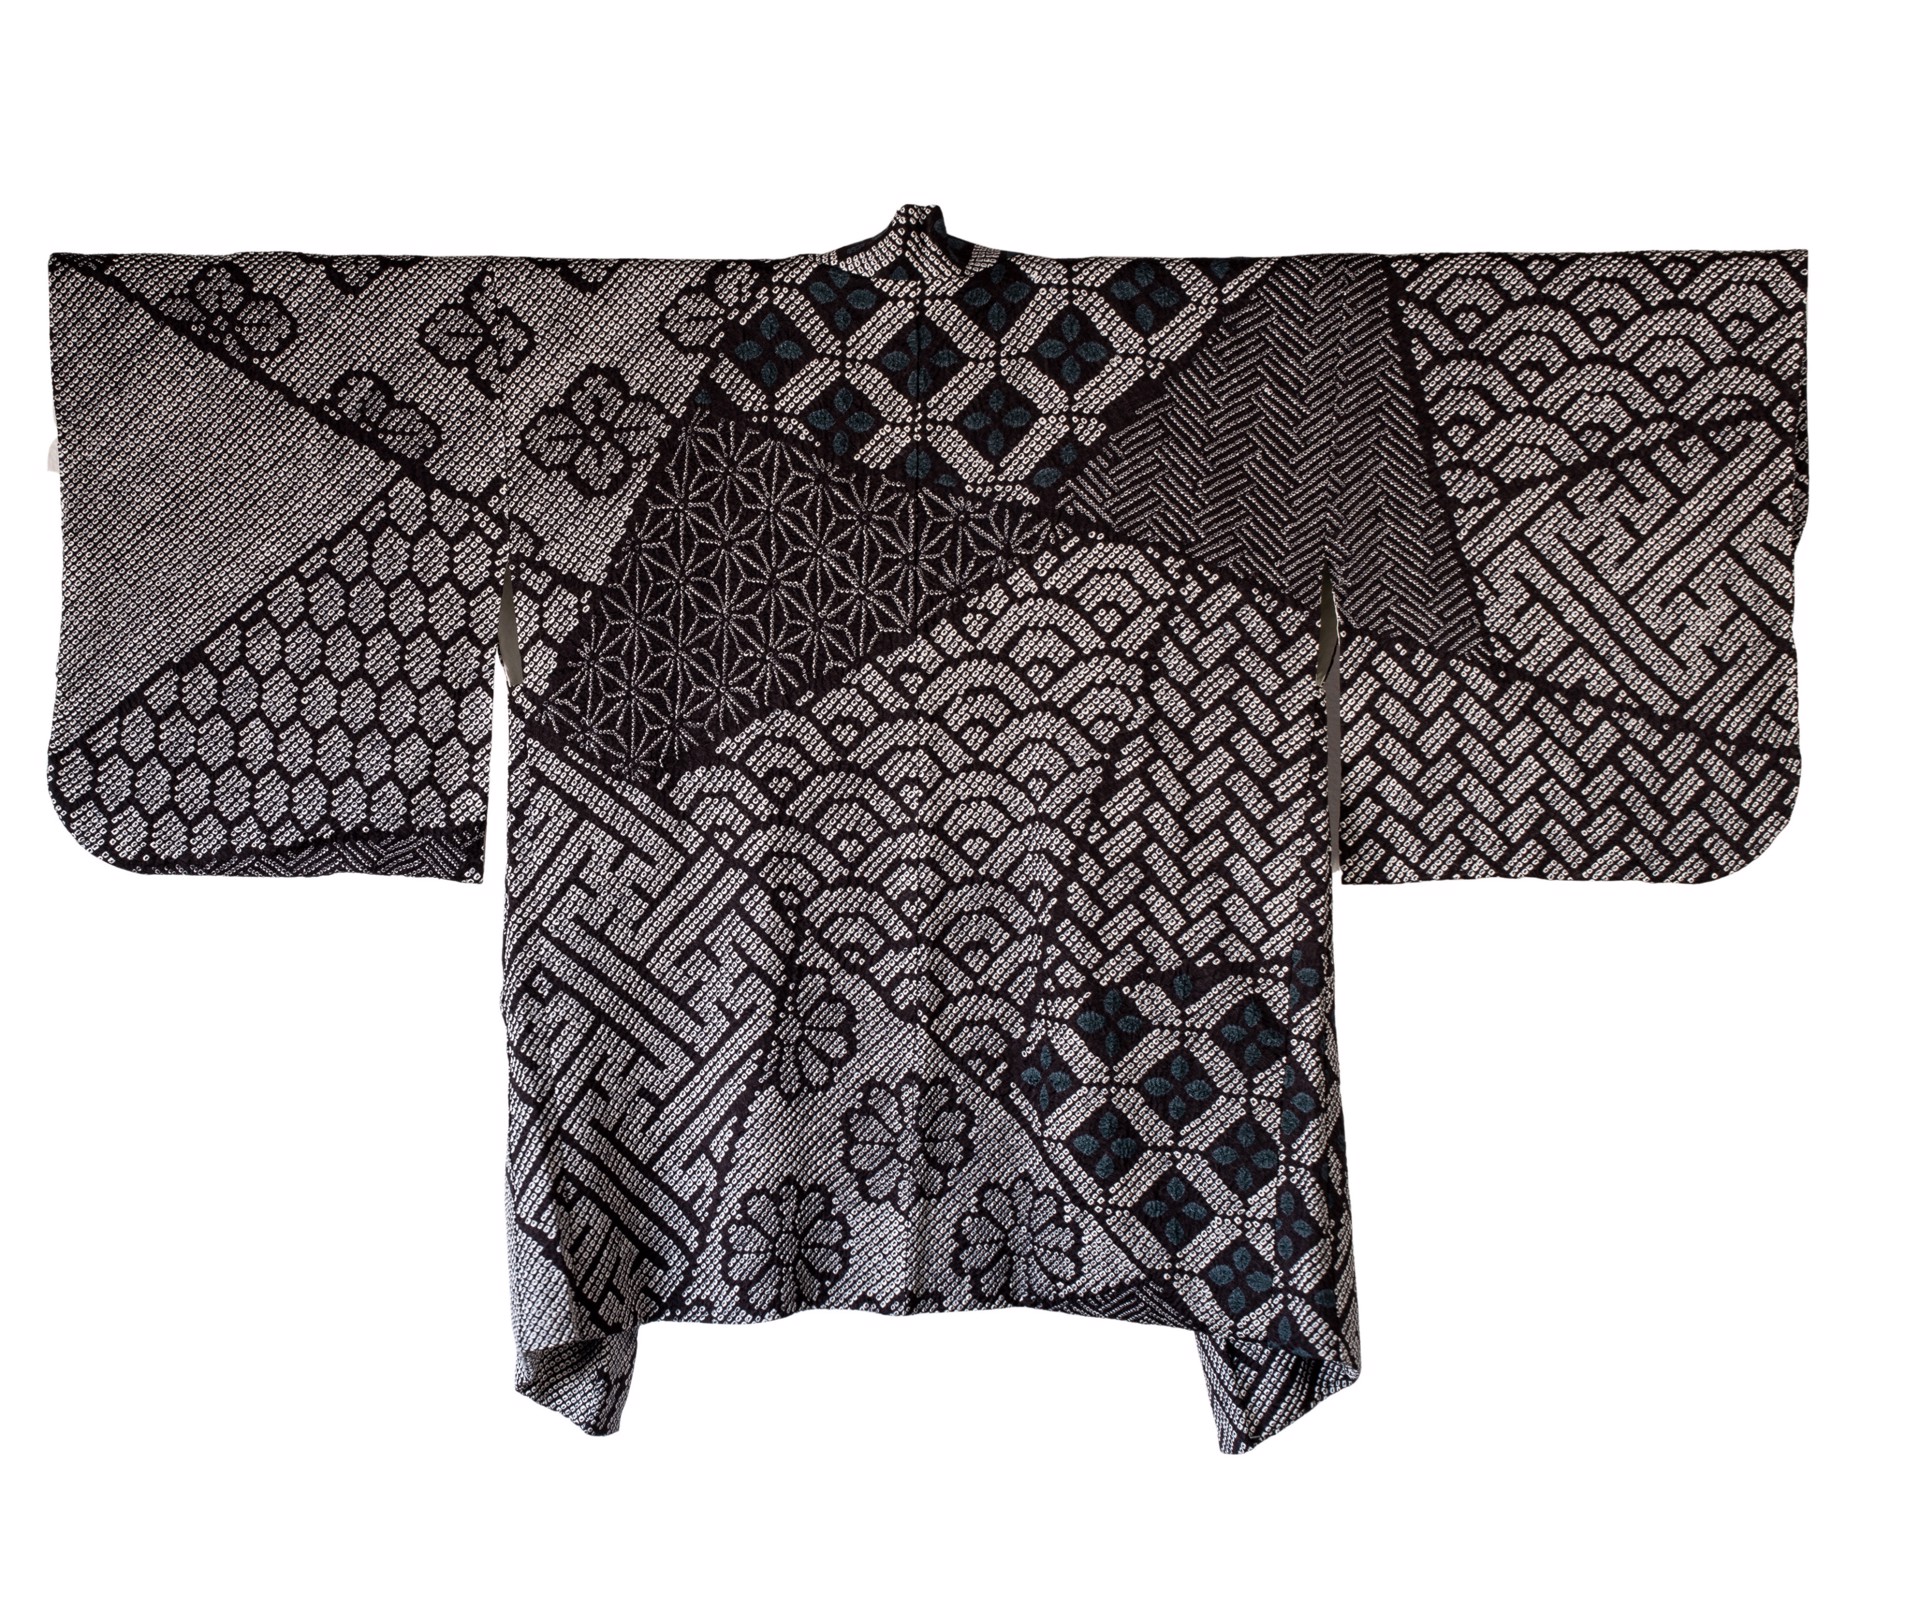 Vintage Full Shibori Jacket by Kimono